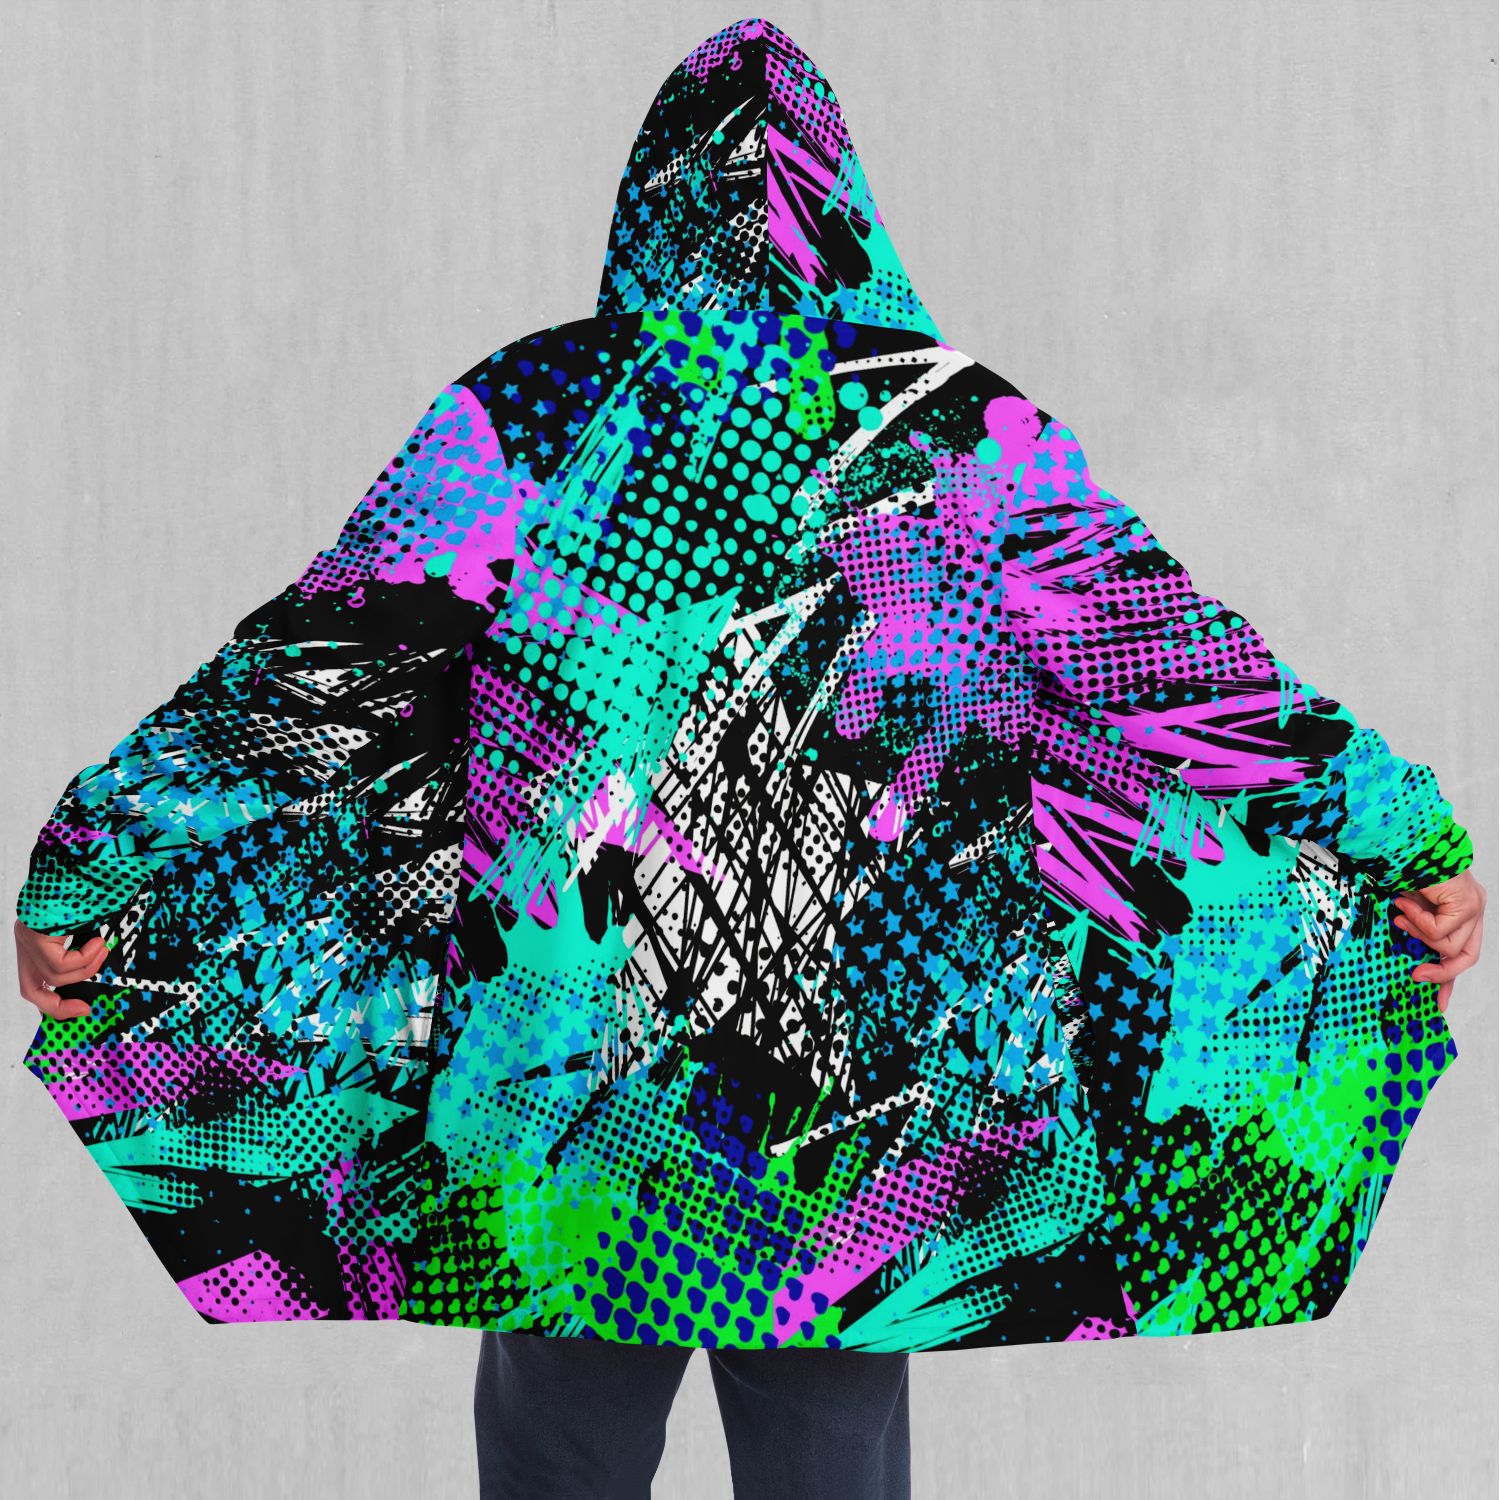 Electric Avenue Cloak - Azimuth Clothing